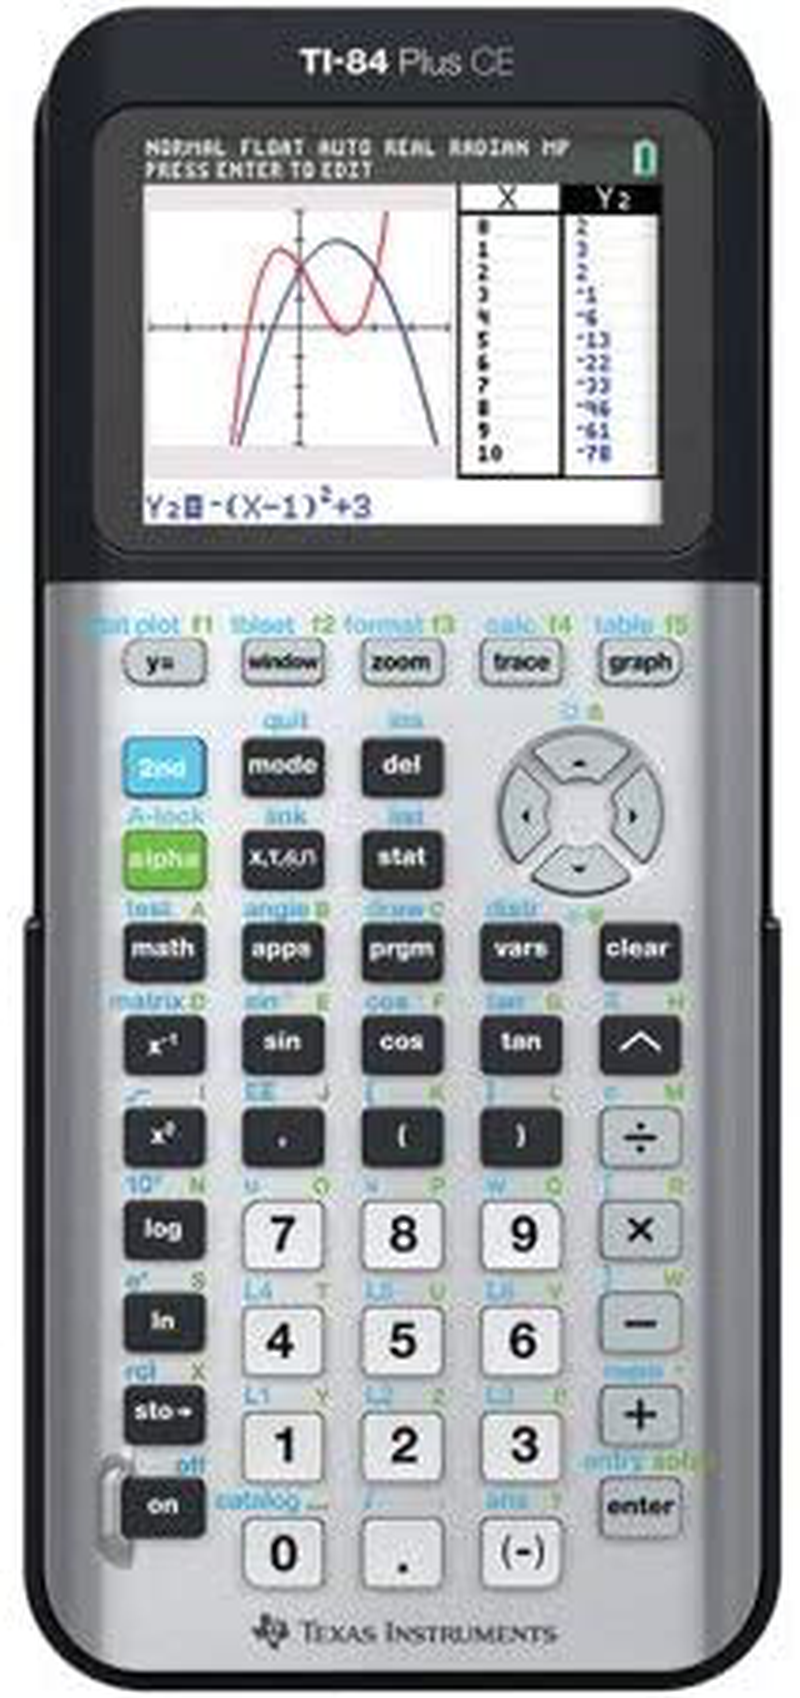 Texas Instruments TI-89 Titanium Graphing Calculator, Black, 1 Each (Quantity)